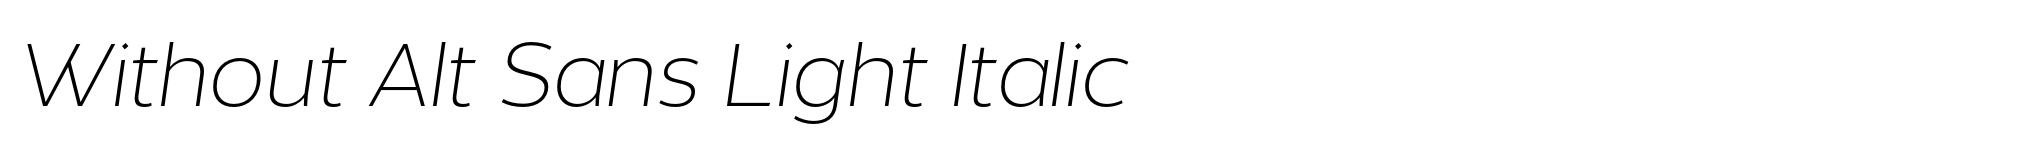 Without Alt Sans Light Italic image